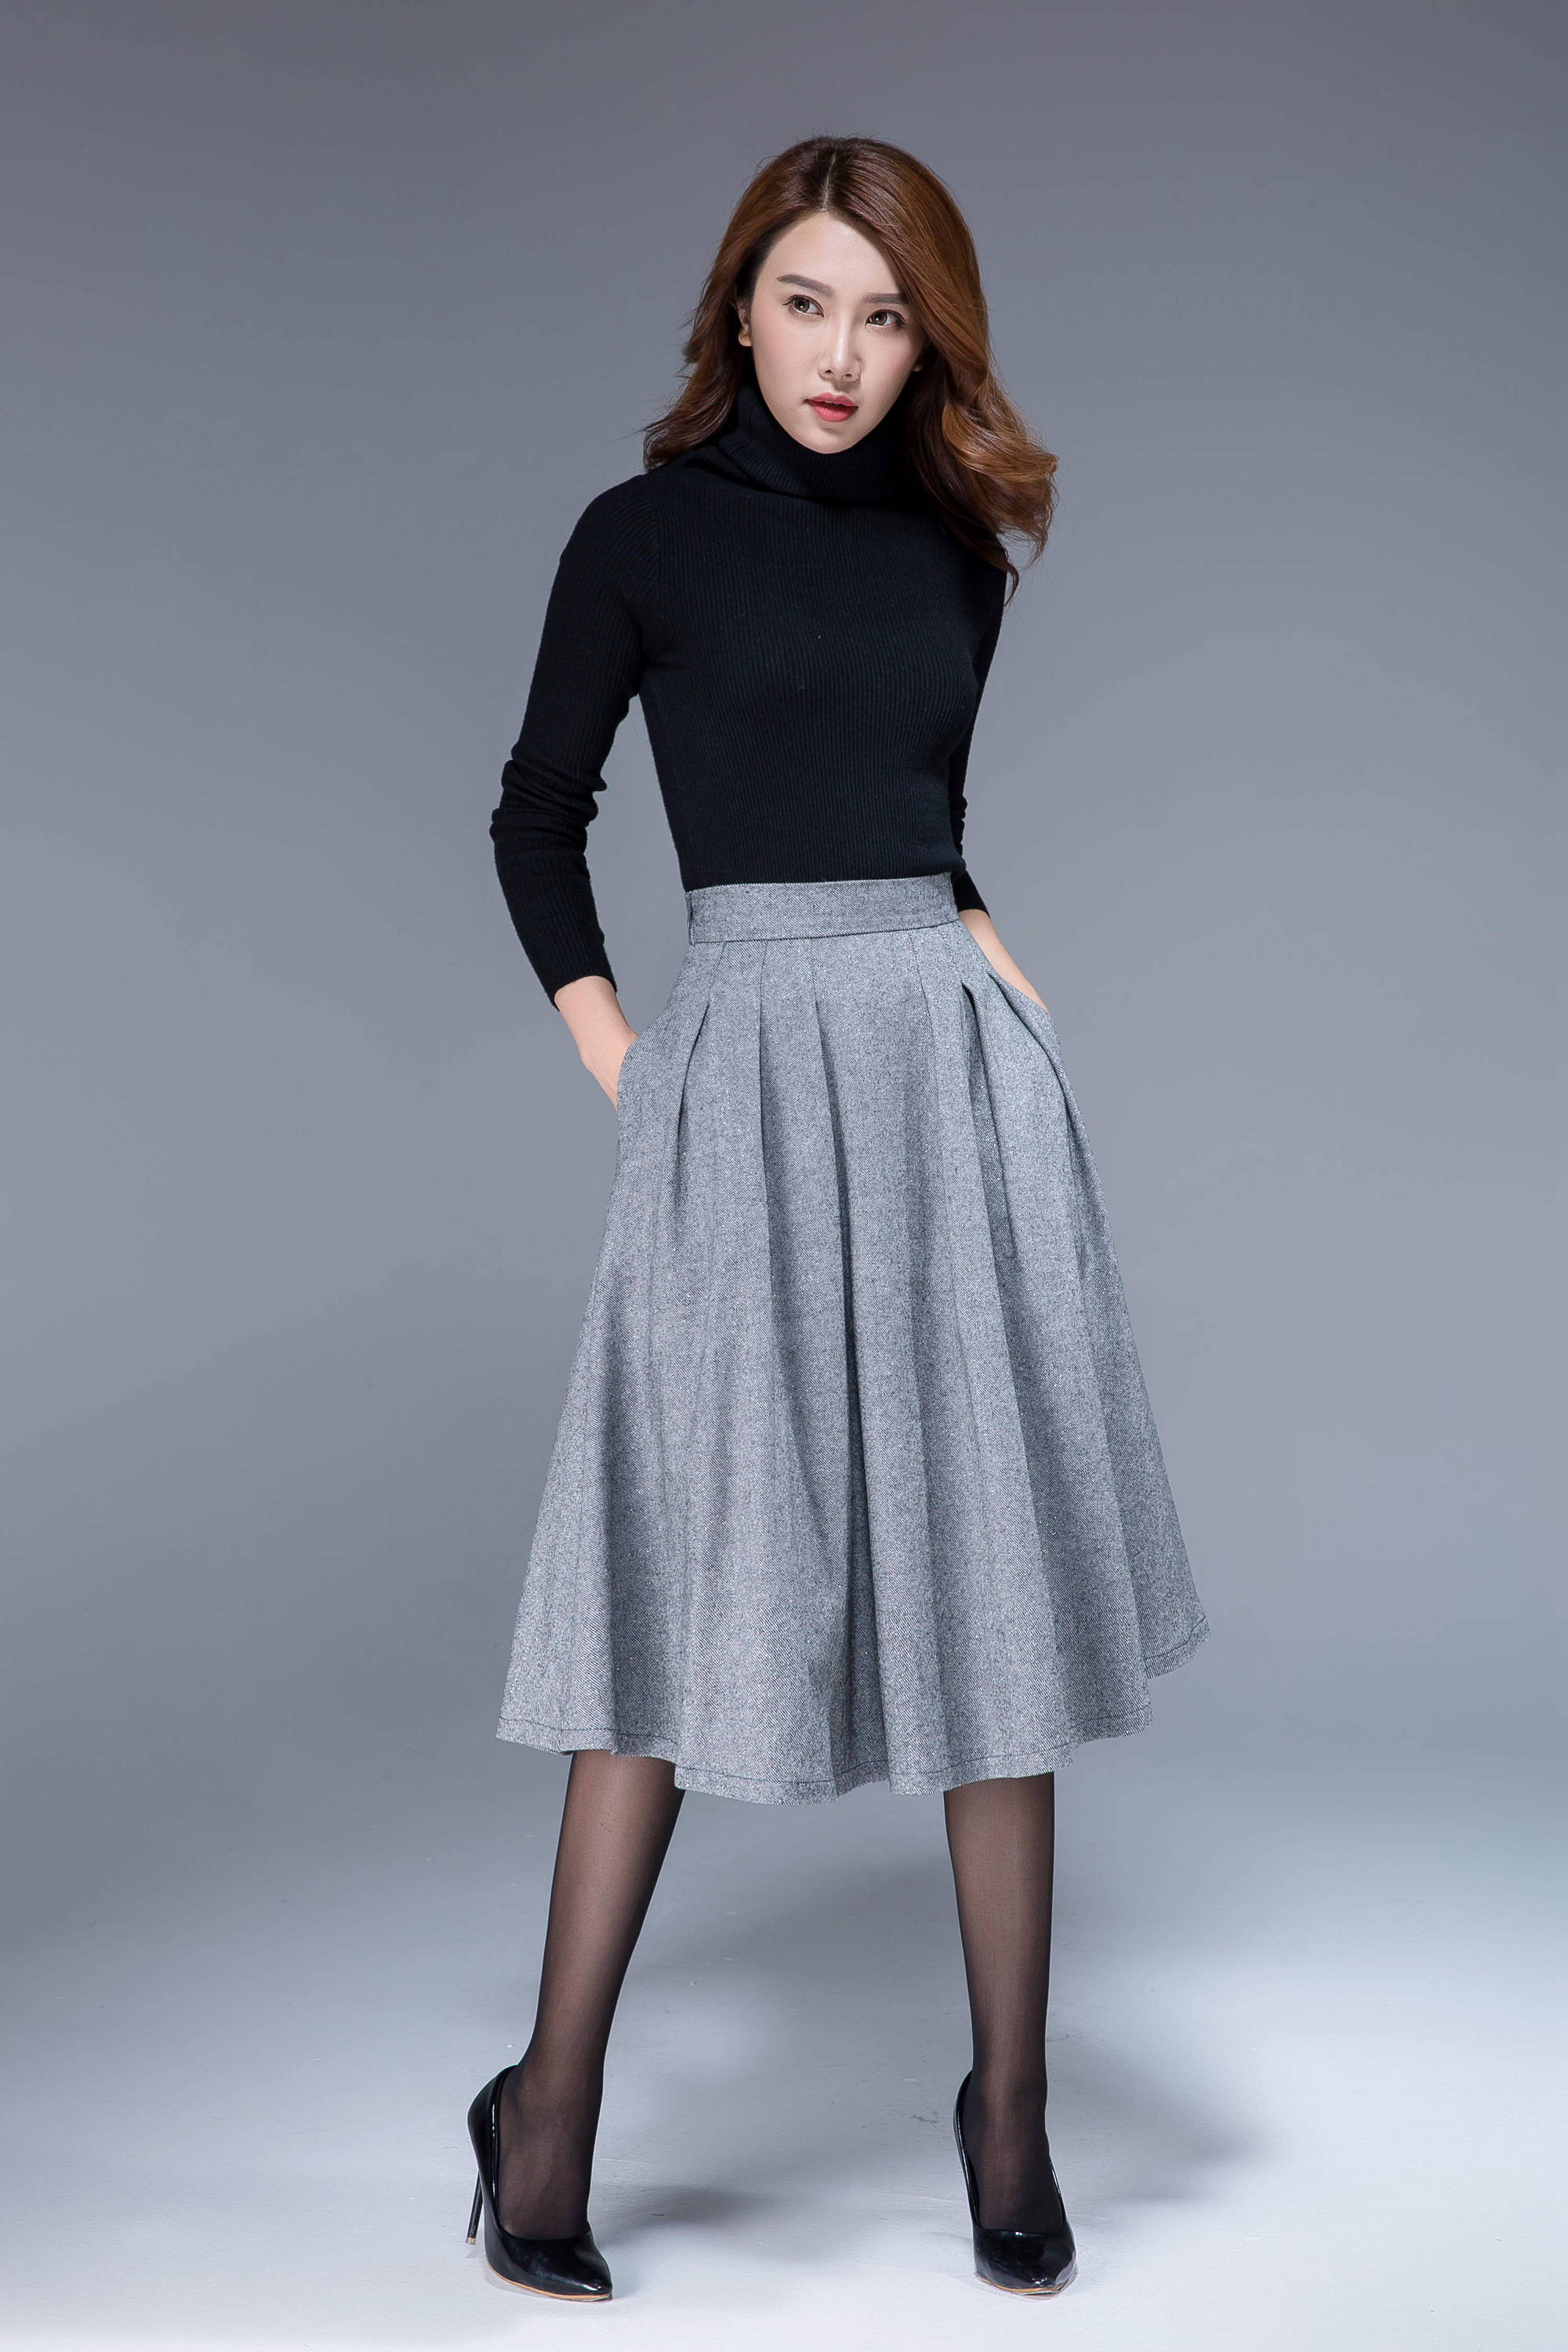 Wool mid-length skirt blog.knak.jp